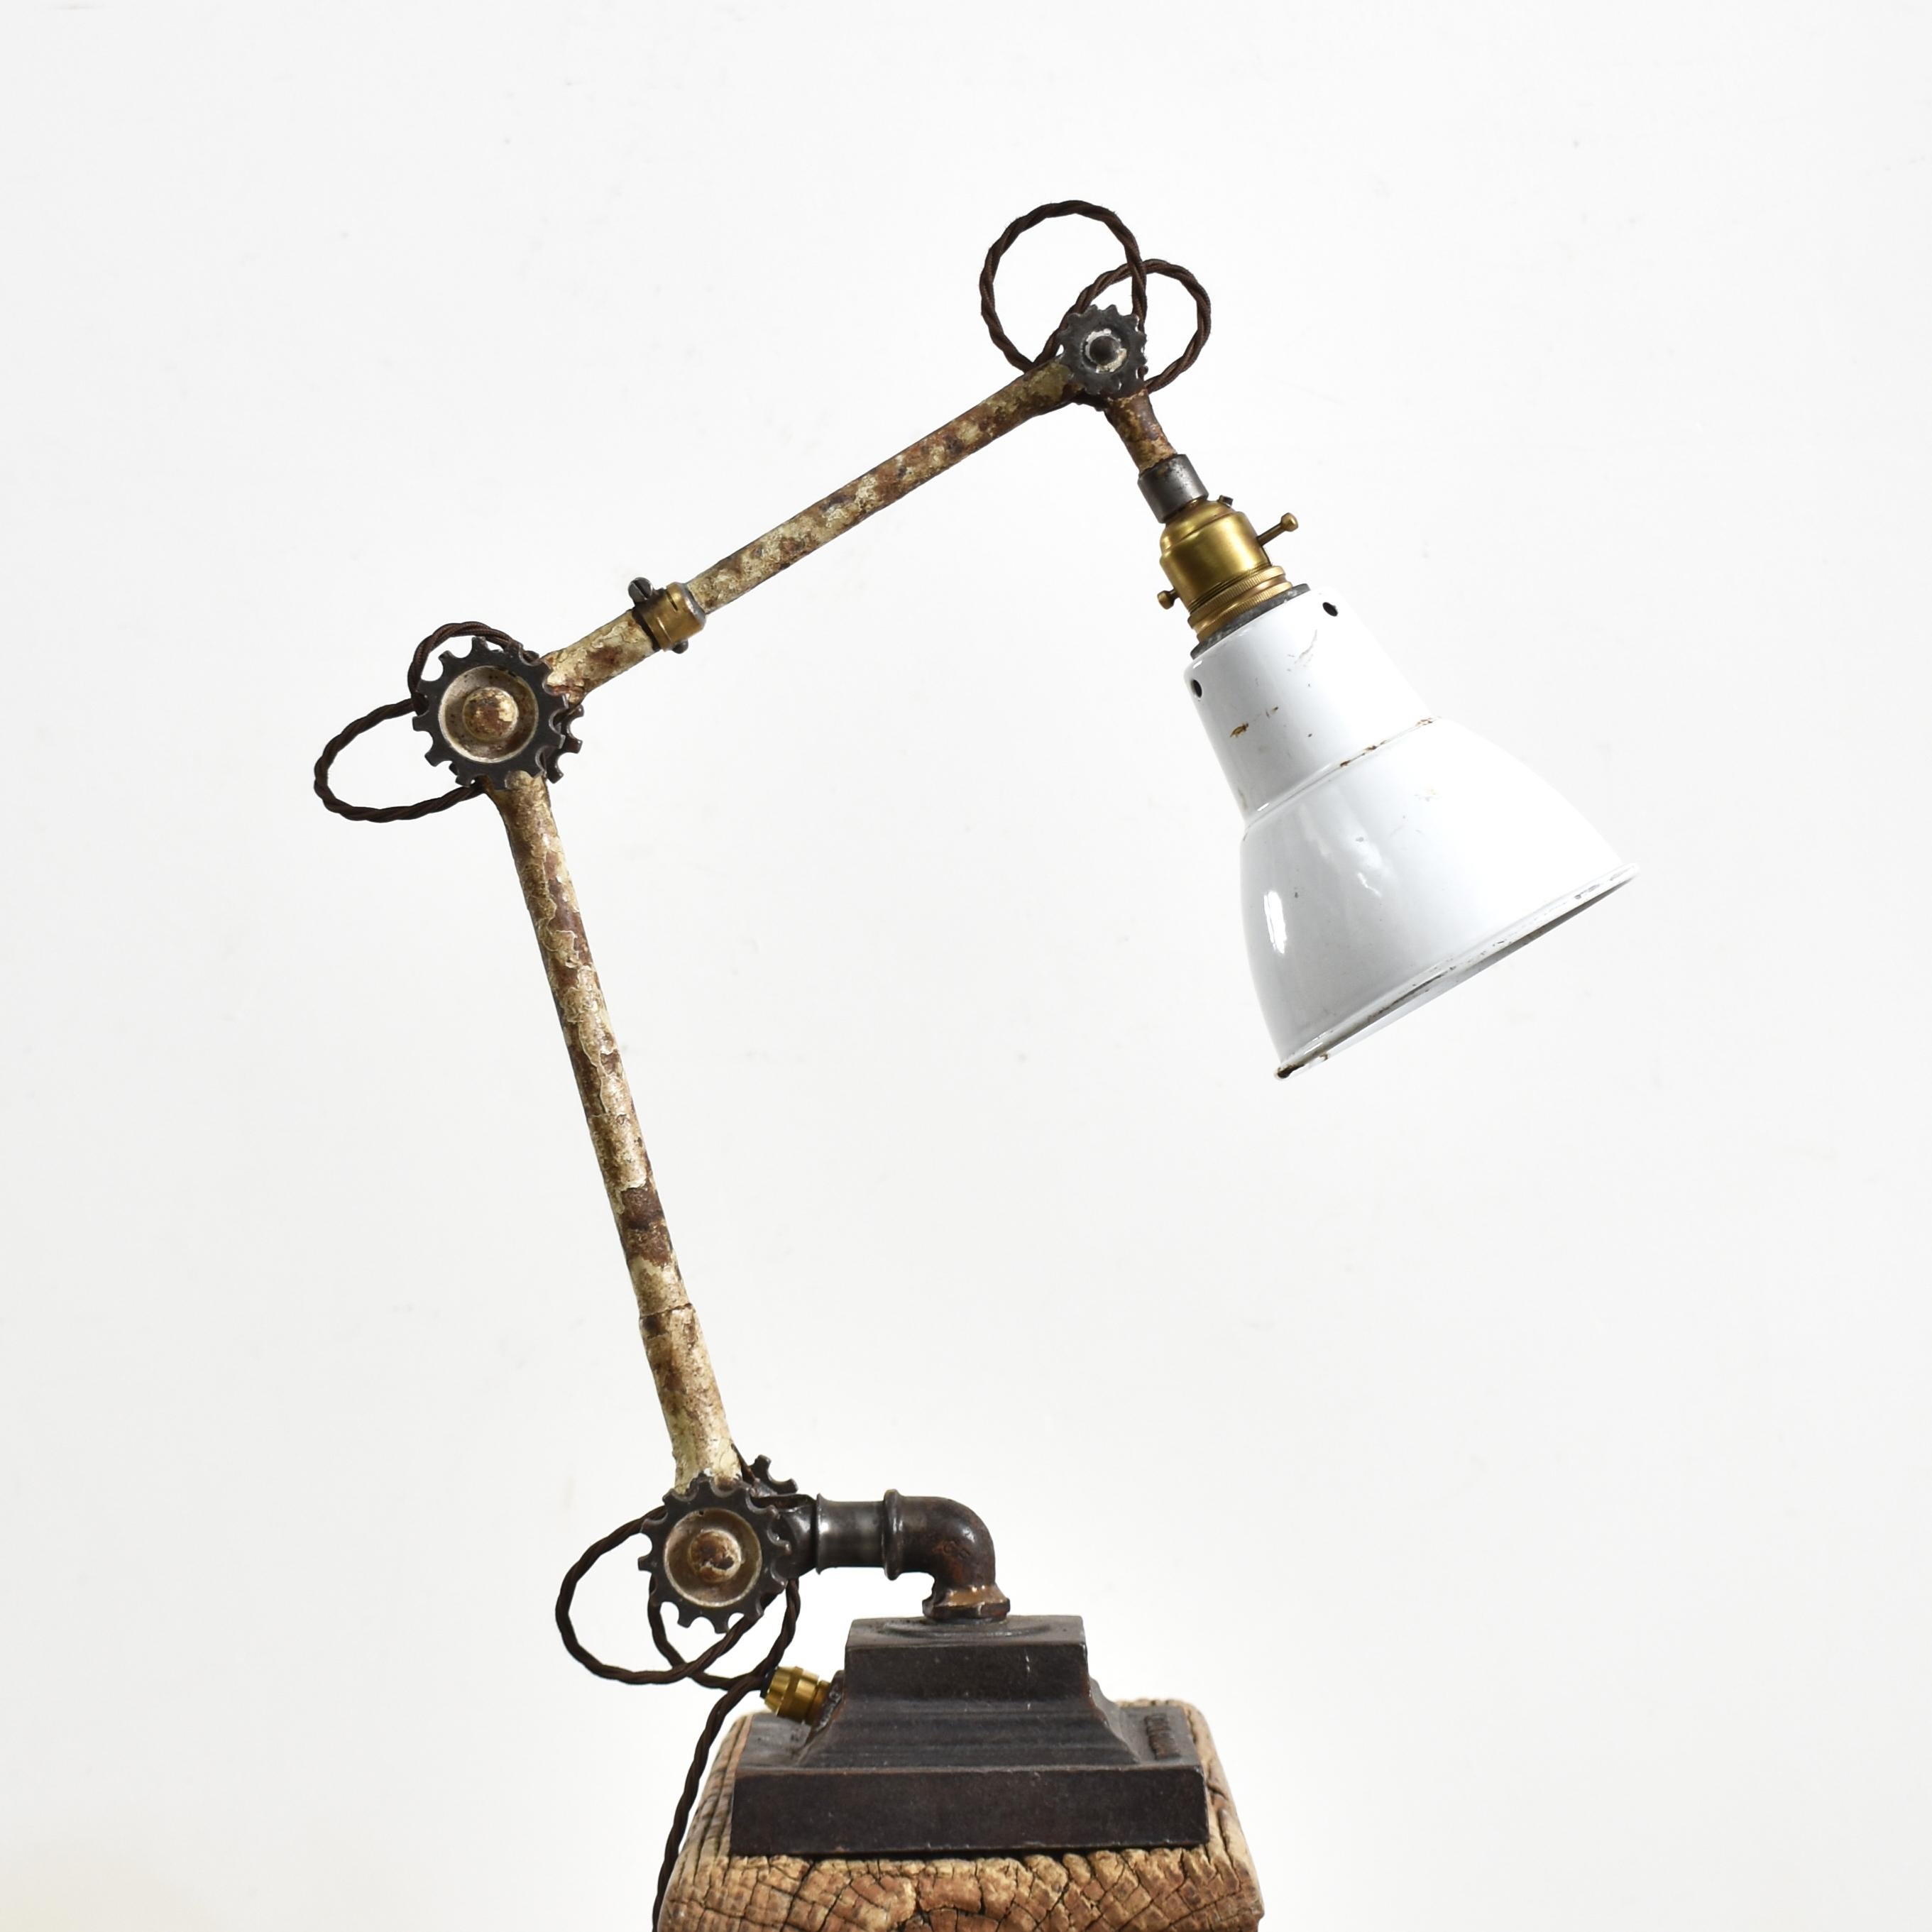 Lampe de bureau industrielle Dugdills

Une lampe Dugdills rare, récupérée d'une installation militaire. La lampe est dans son état d'origine, conservant son abat-jour en émail blanc et ses bras en acier avec leur peinture crème d'origine. Il s'agit